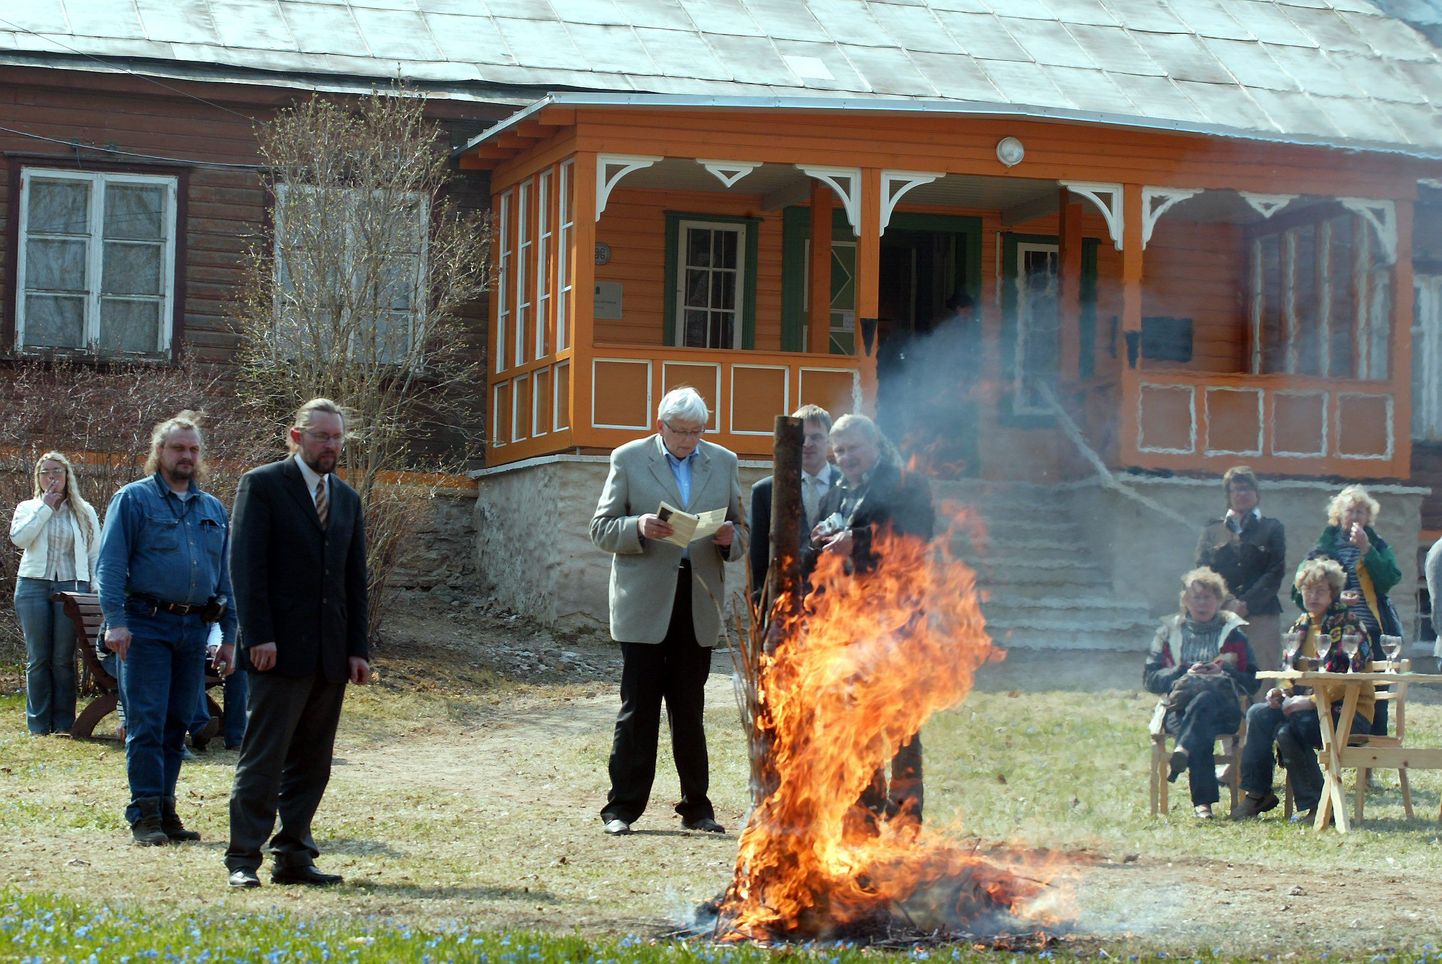 Viru-Nigula pastoraadi Virumaa Muuseumidele üleandmise lepingut allkirjastamist pisut vähem kui kolme aasta eest tähistati nõiakuju põletamisega.